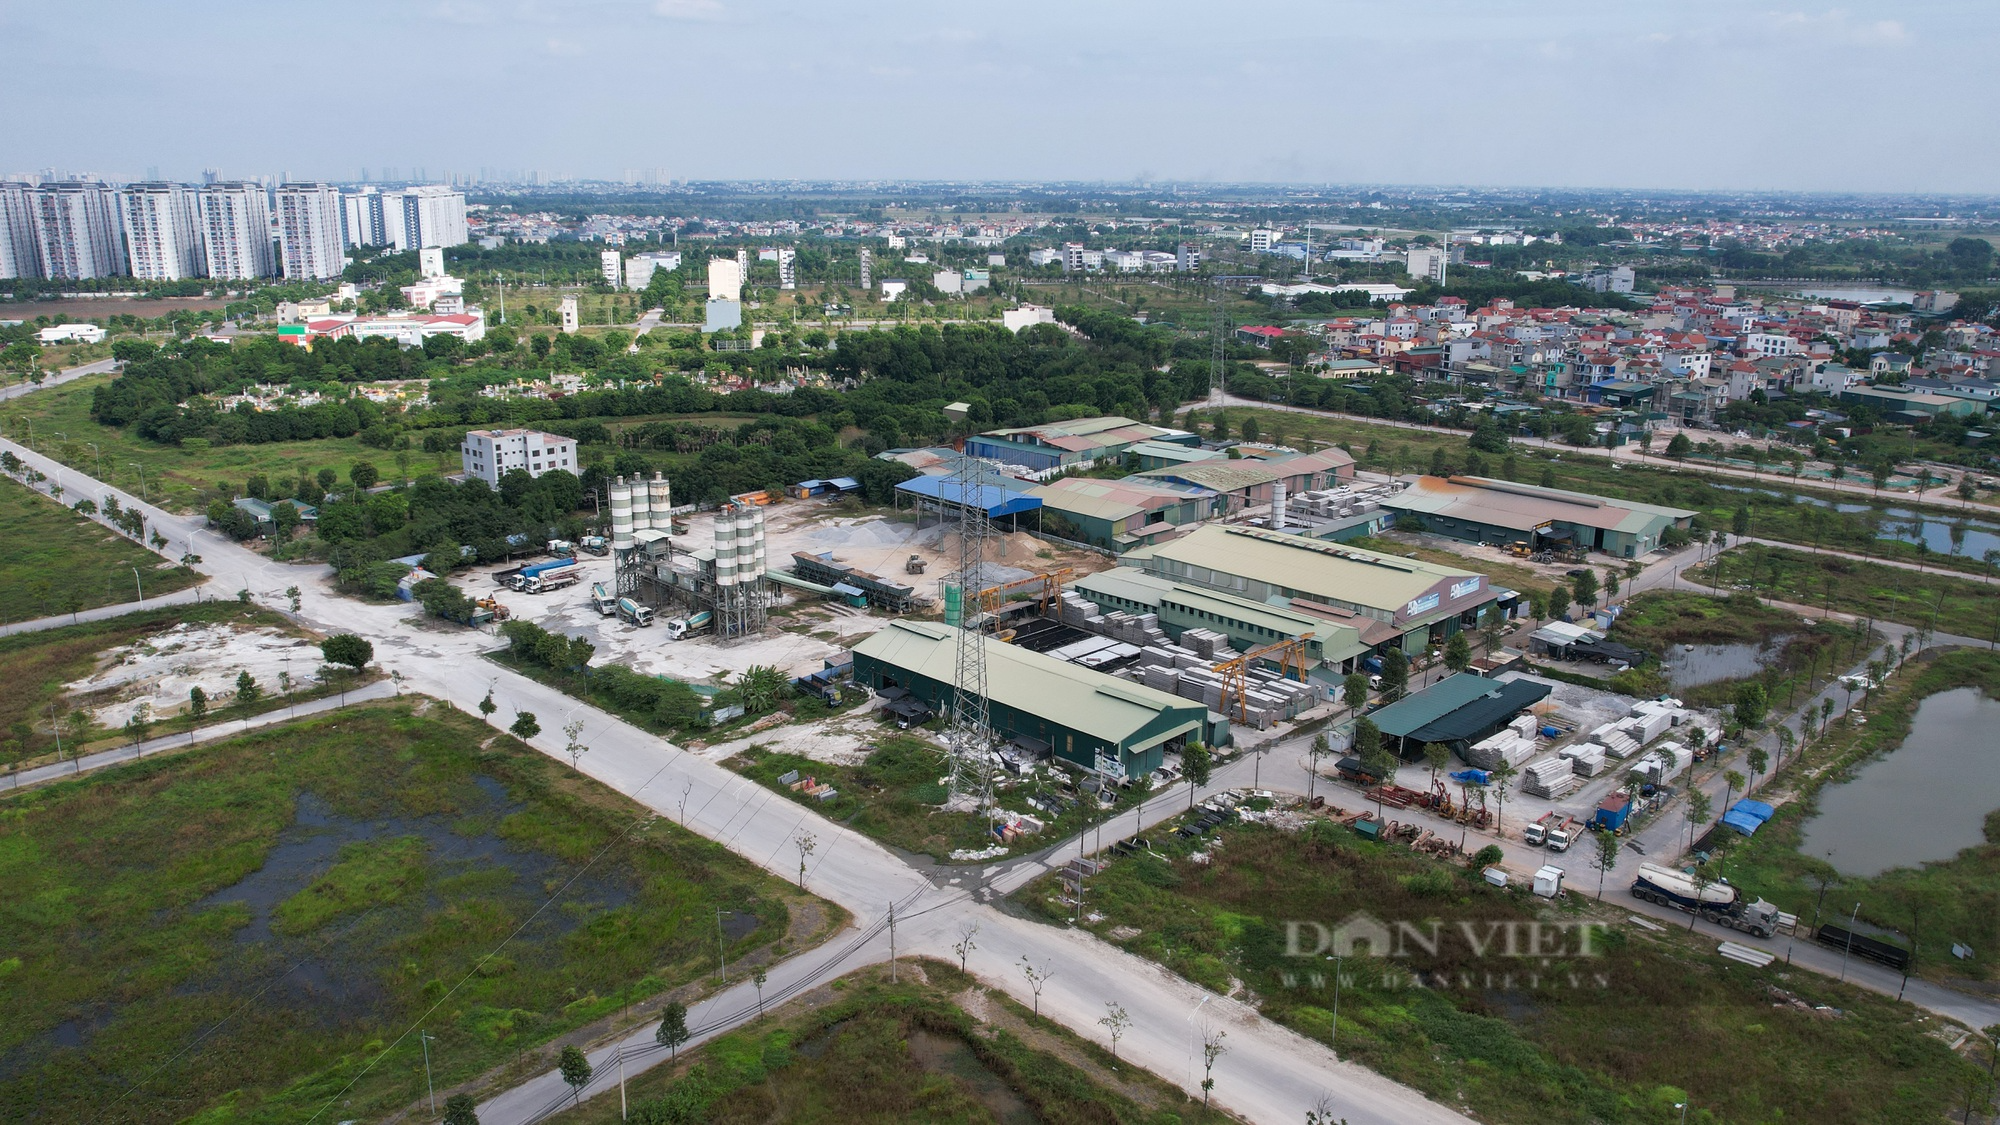 Hình ảnh trạm cấp nước Thanh Hà bị người dân phản đối vì gần nghĩa trang và mương ô nhiễm - Ảnh 6.